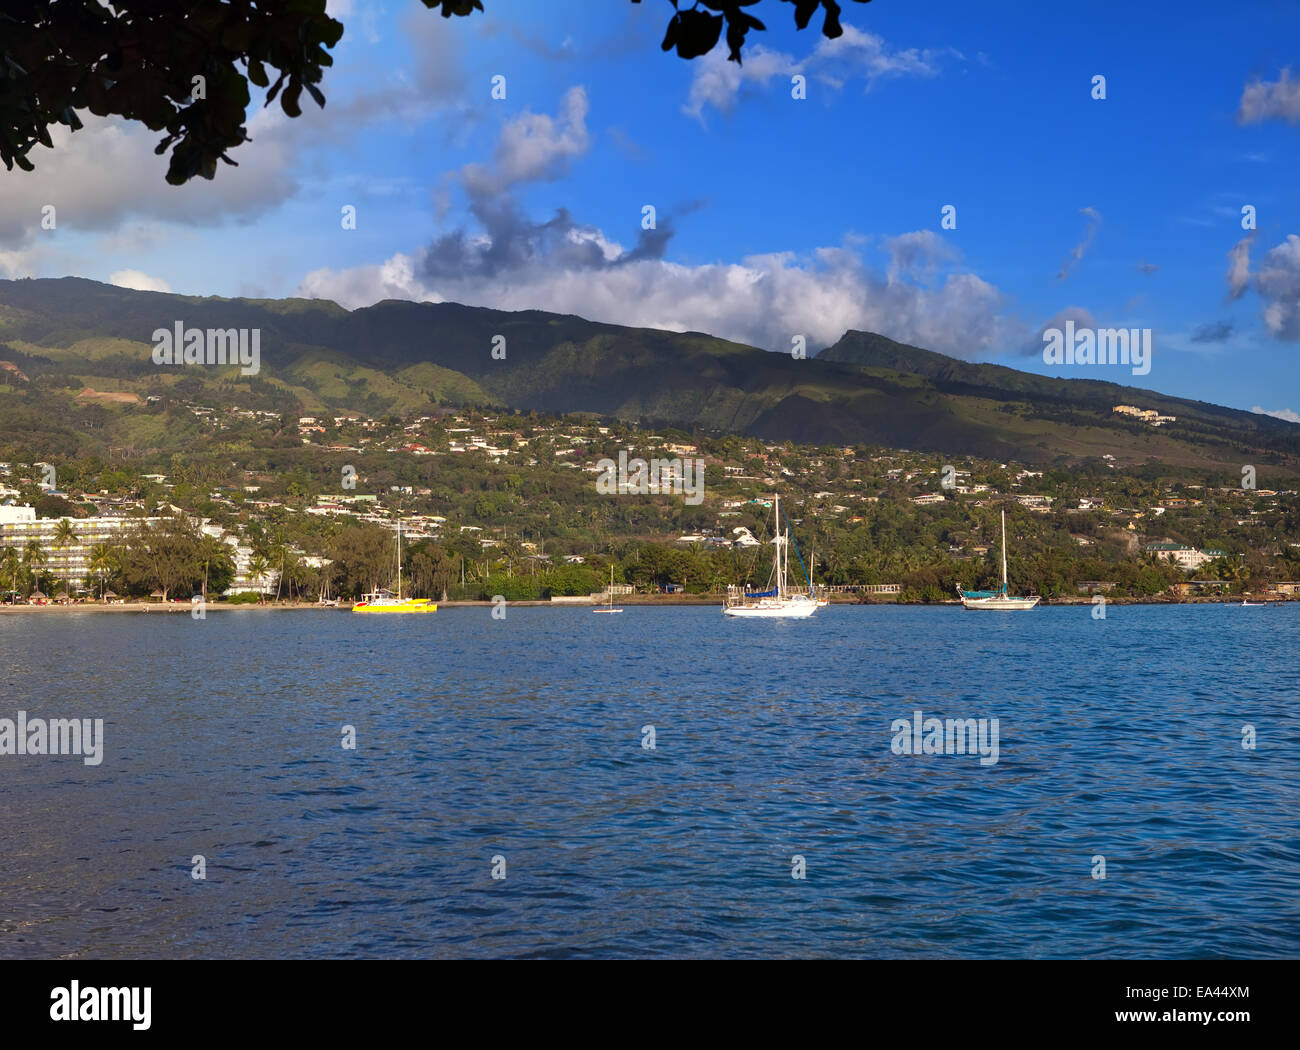 Bay with yachts. Tahiti. Stock Photo